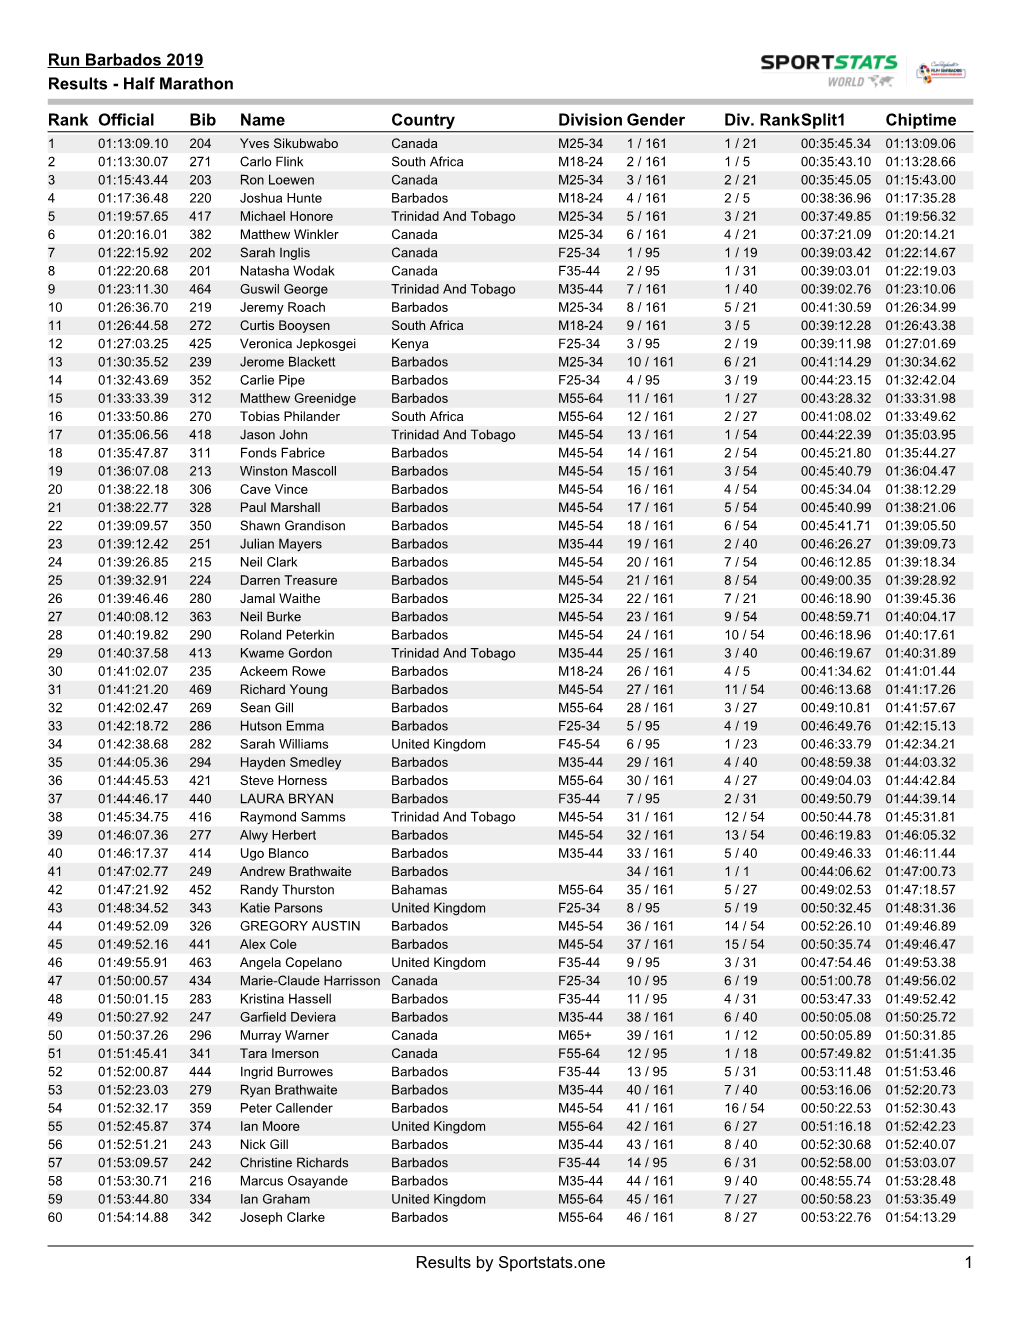 Half Marathon Results